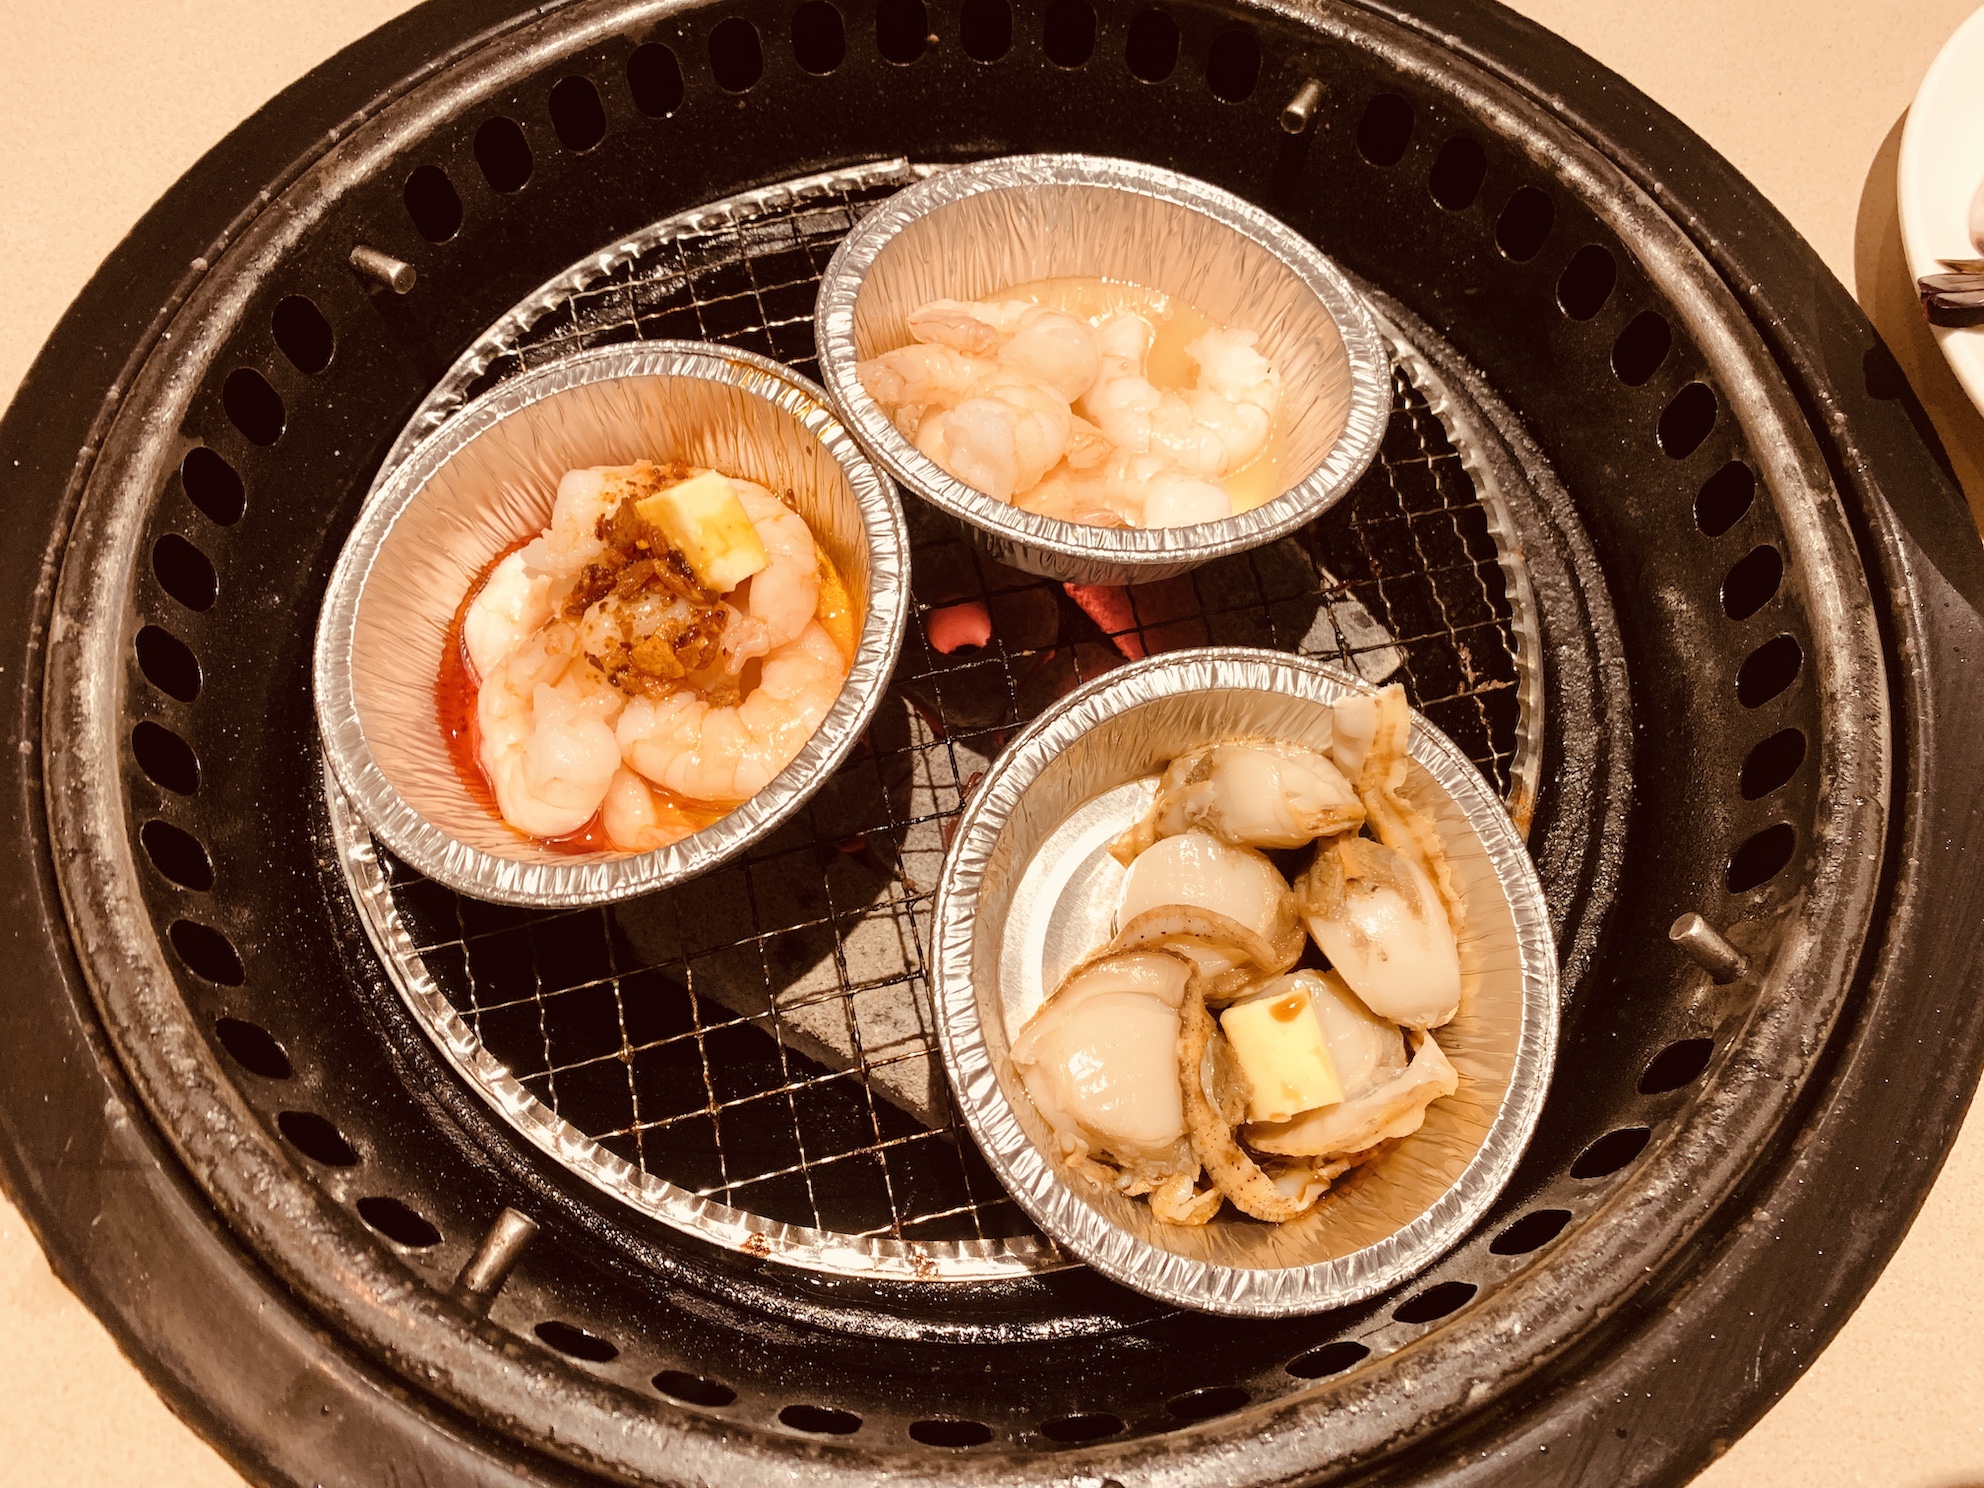 Gyu-Kaku (Novena Square) - Marinated Seafood